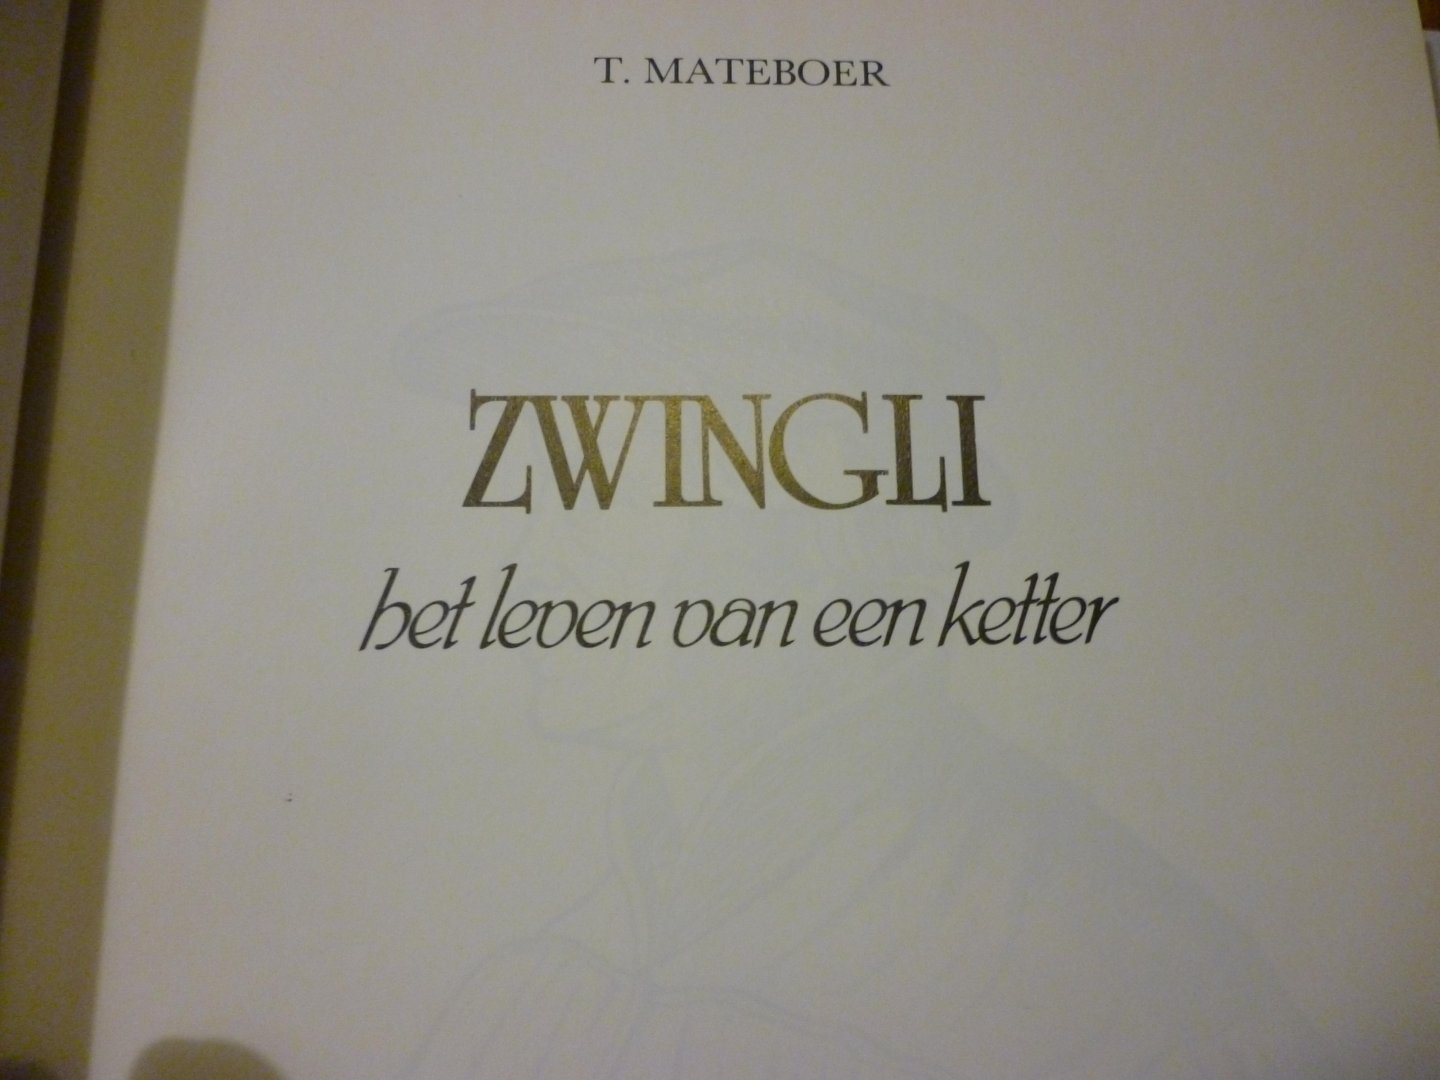 MateboerT - Zwingli het leven van een ketter